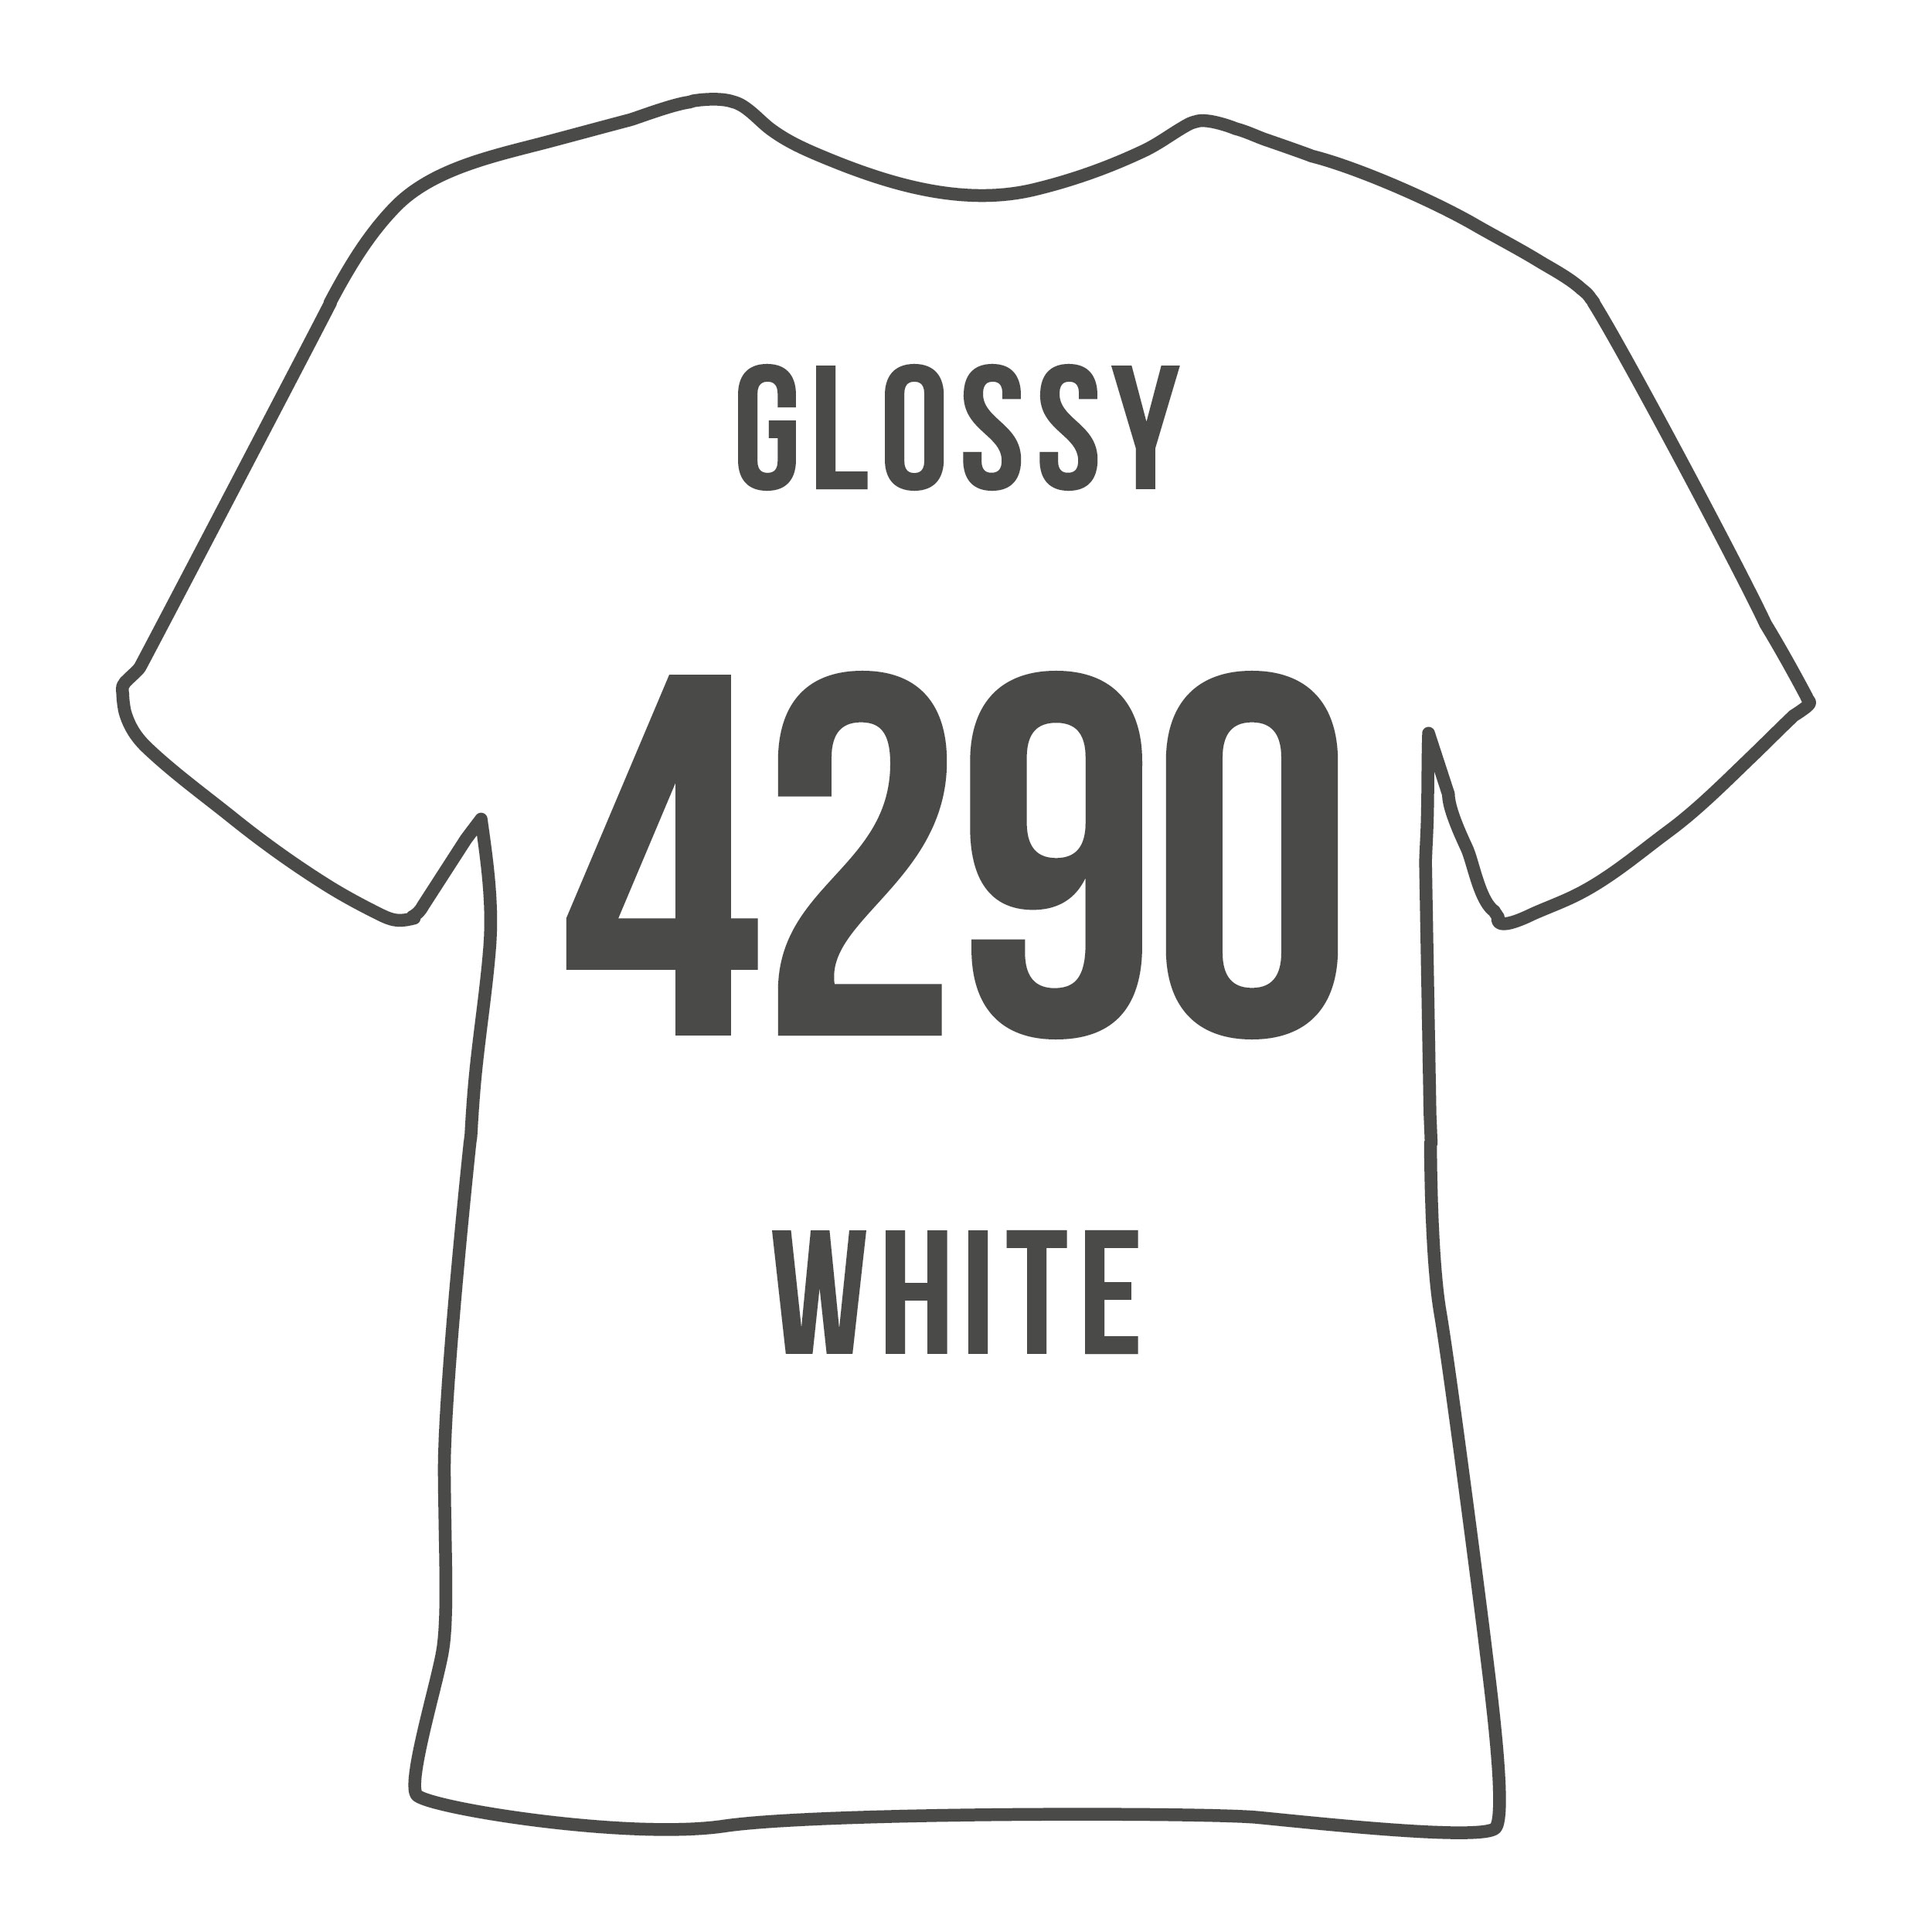 4290 GLOSSY WHITE